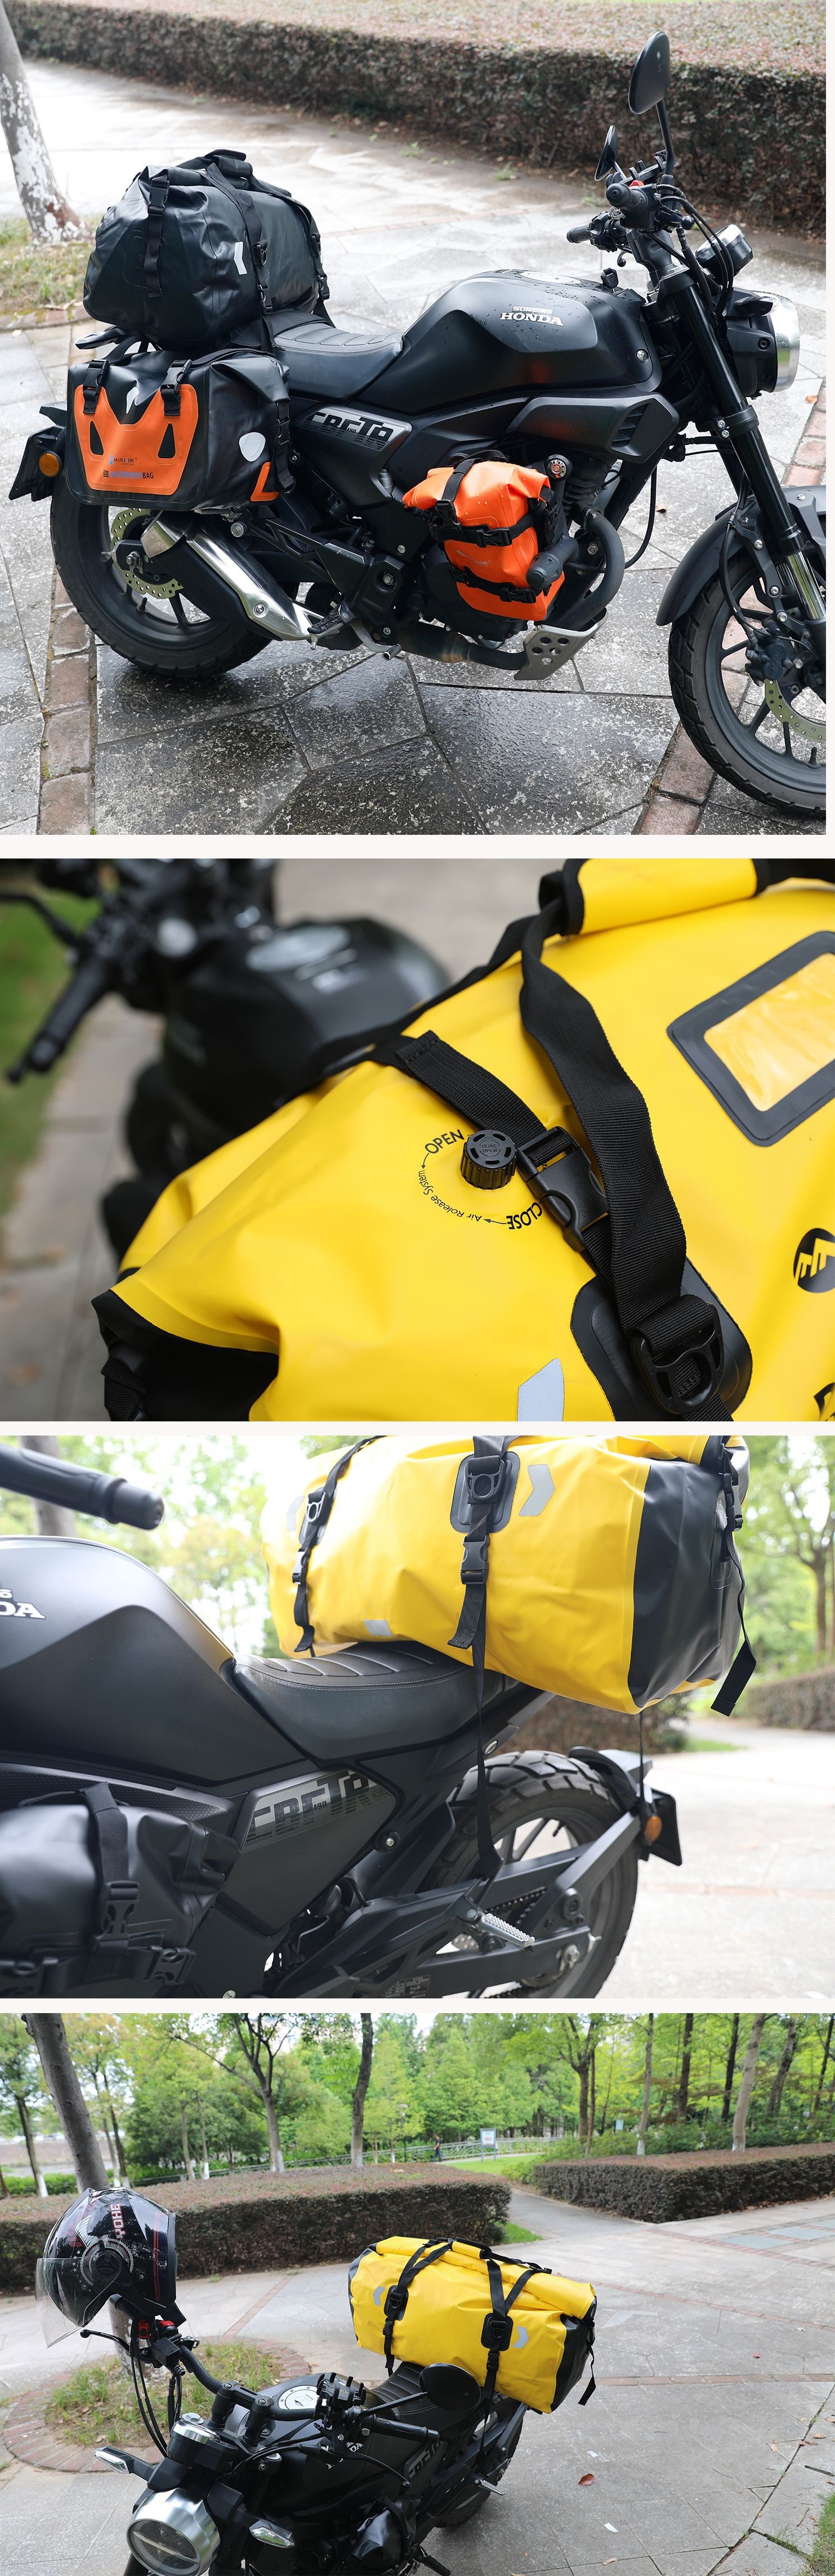 Túi chống nước xe máy túi đựng đồ chống thấm nước chuyên dụng cho các hoạt động thể thao, dã ngoại, phượt, thám hiểm